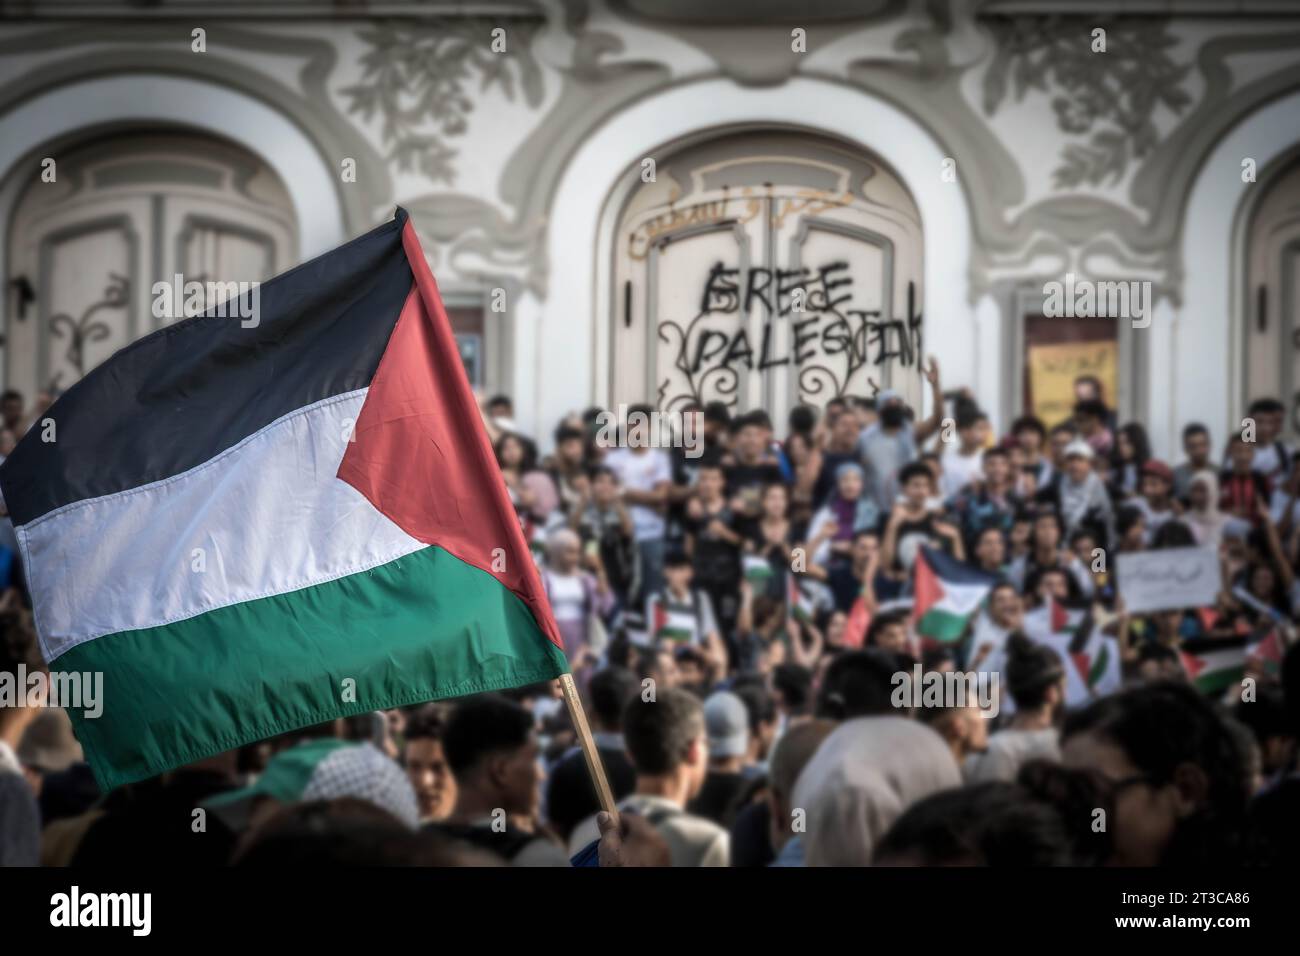 La bandiera palestinese alla manifestazione di protesta pro-palestinese a Tunisi con la folla di manifestanti e le parole "Palestina libera” sul muro Foto Stock